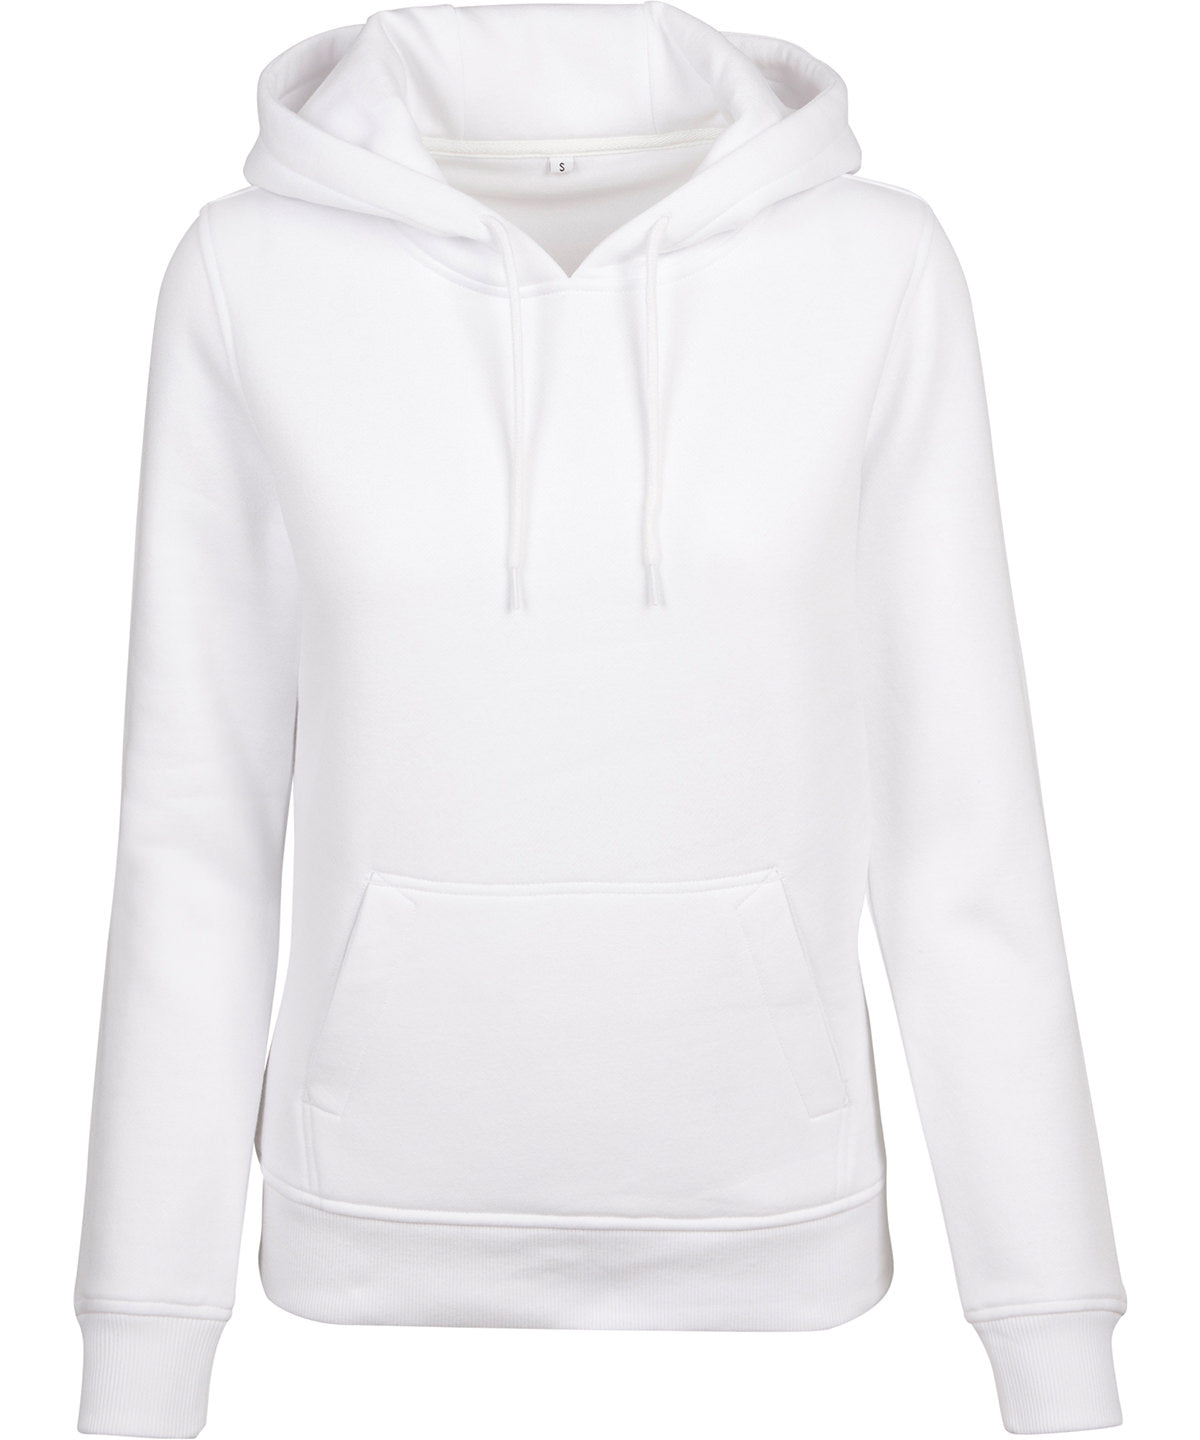 Personalised Hoodies - Black Build Your Brand Women's heavy hoodie